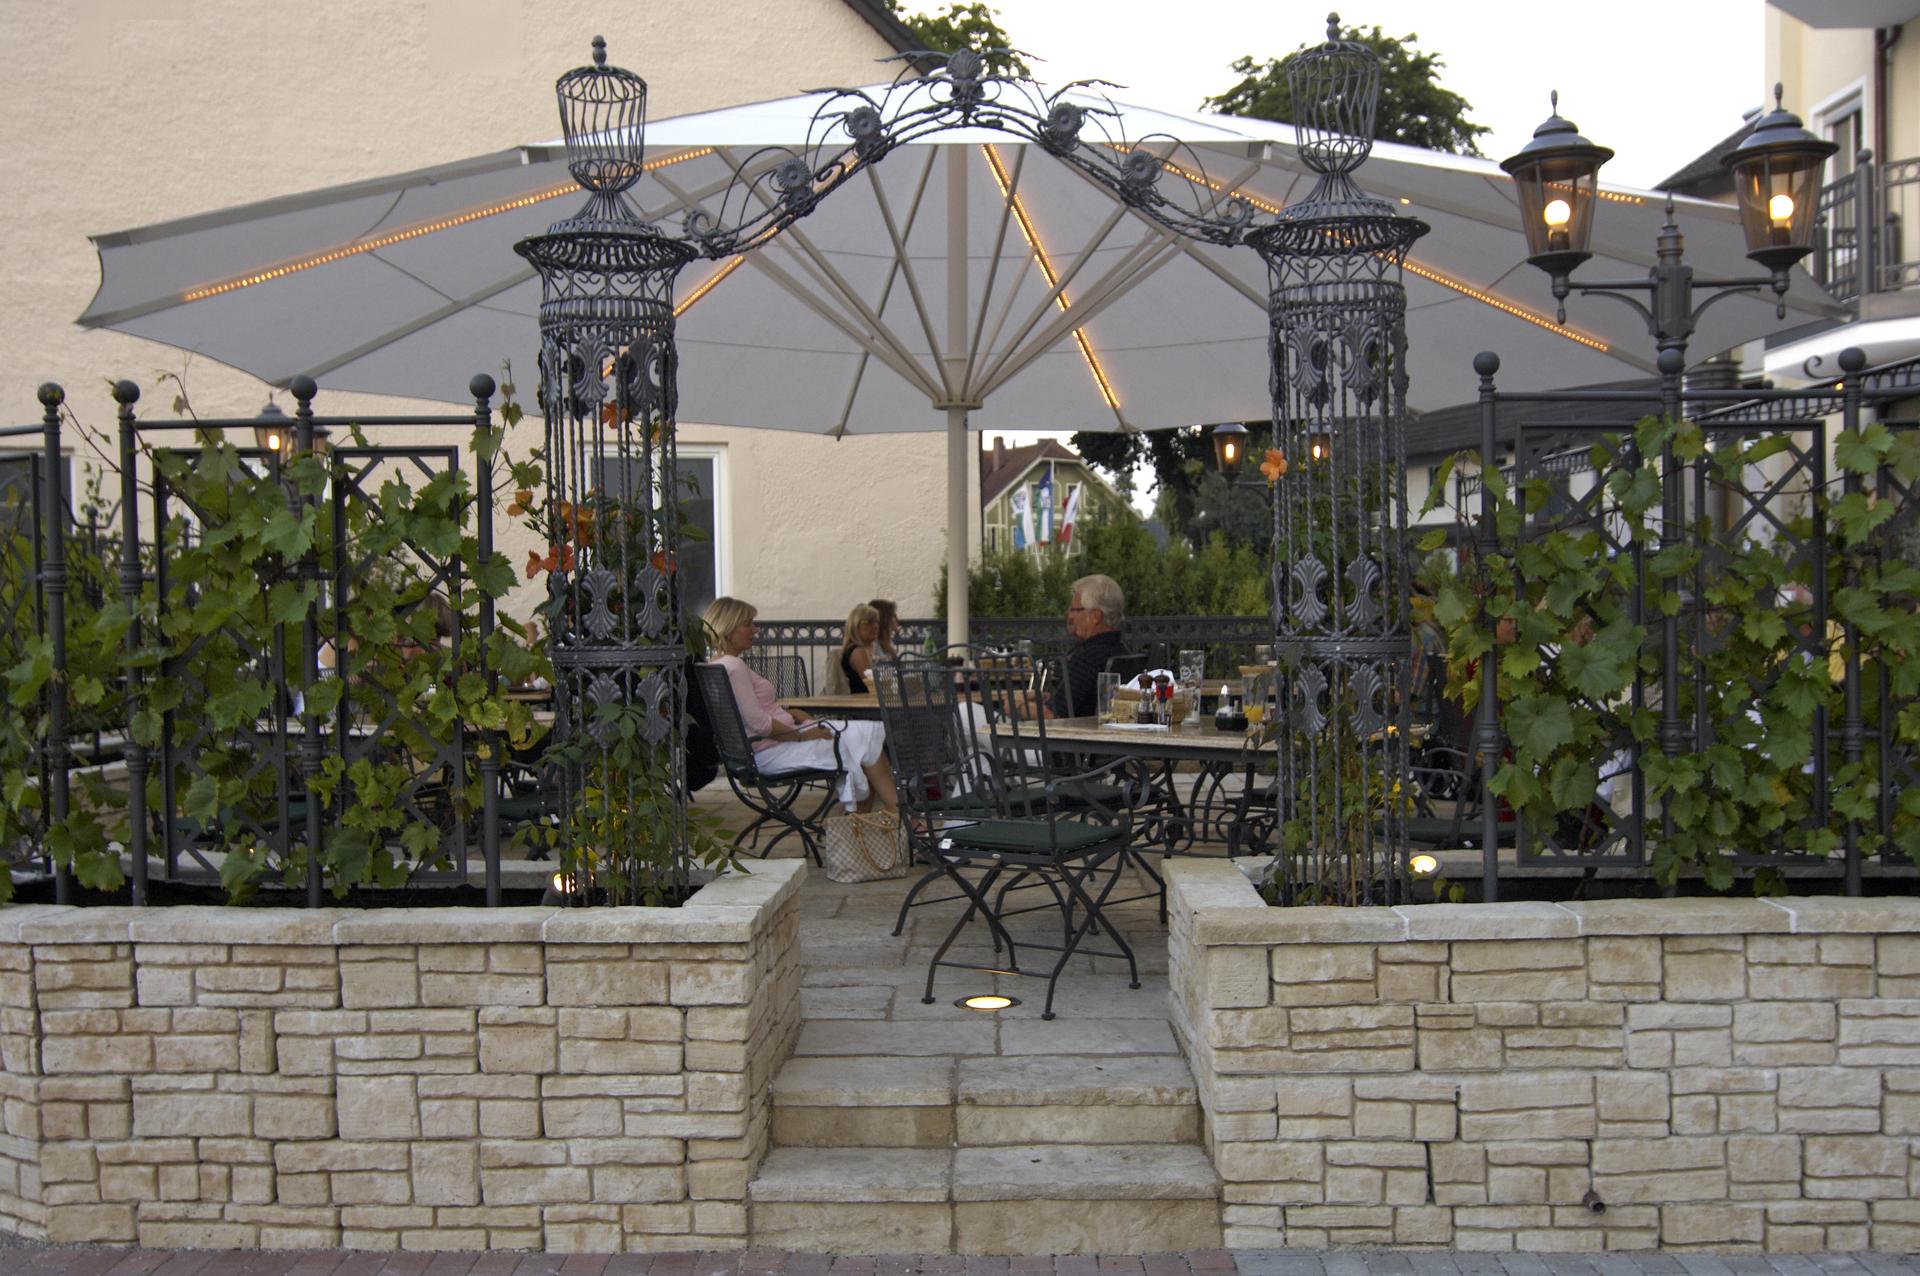 Terrasse eines Restaurants im mediterranen Look